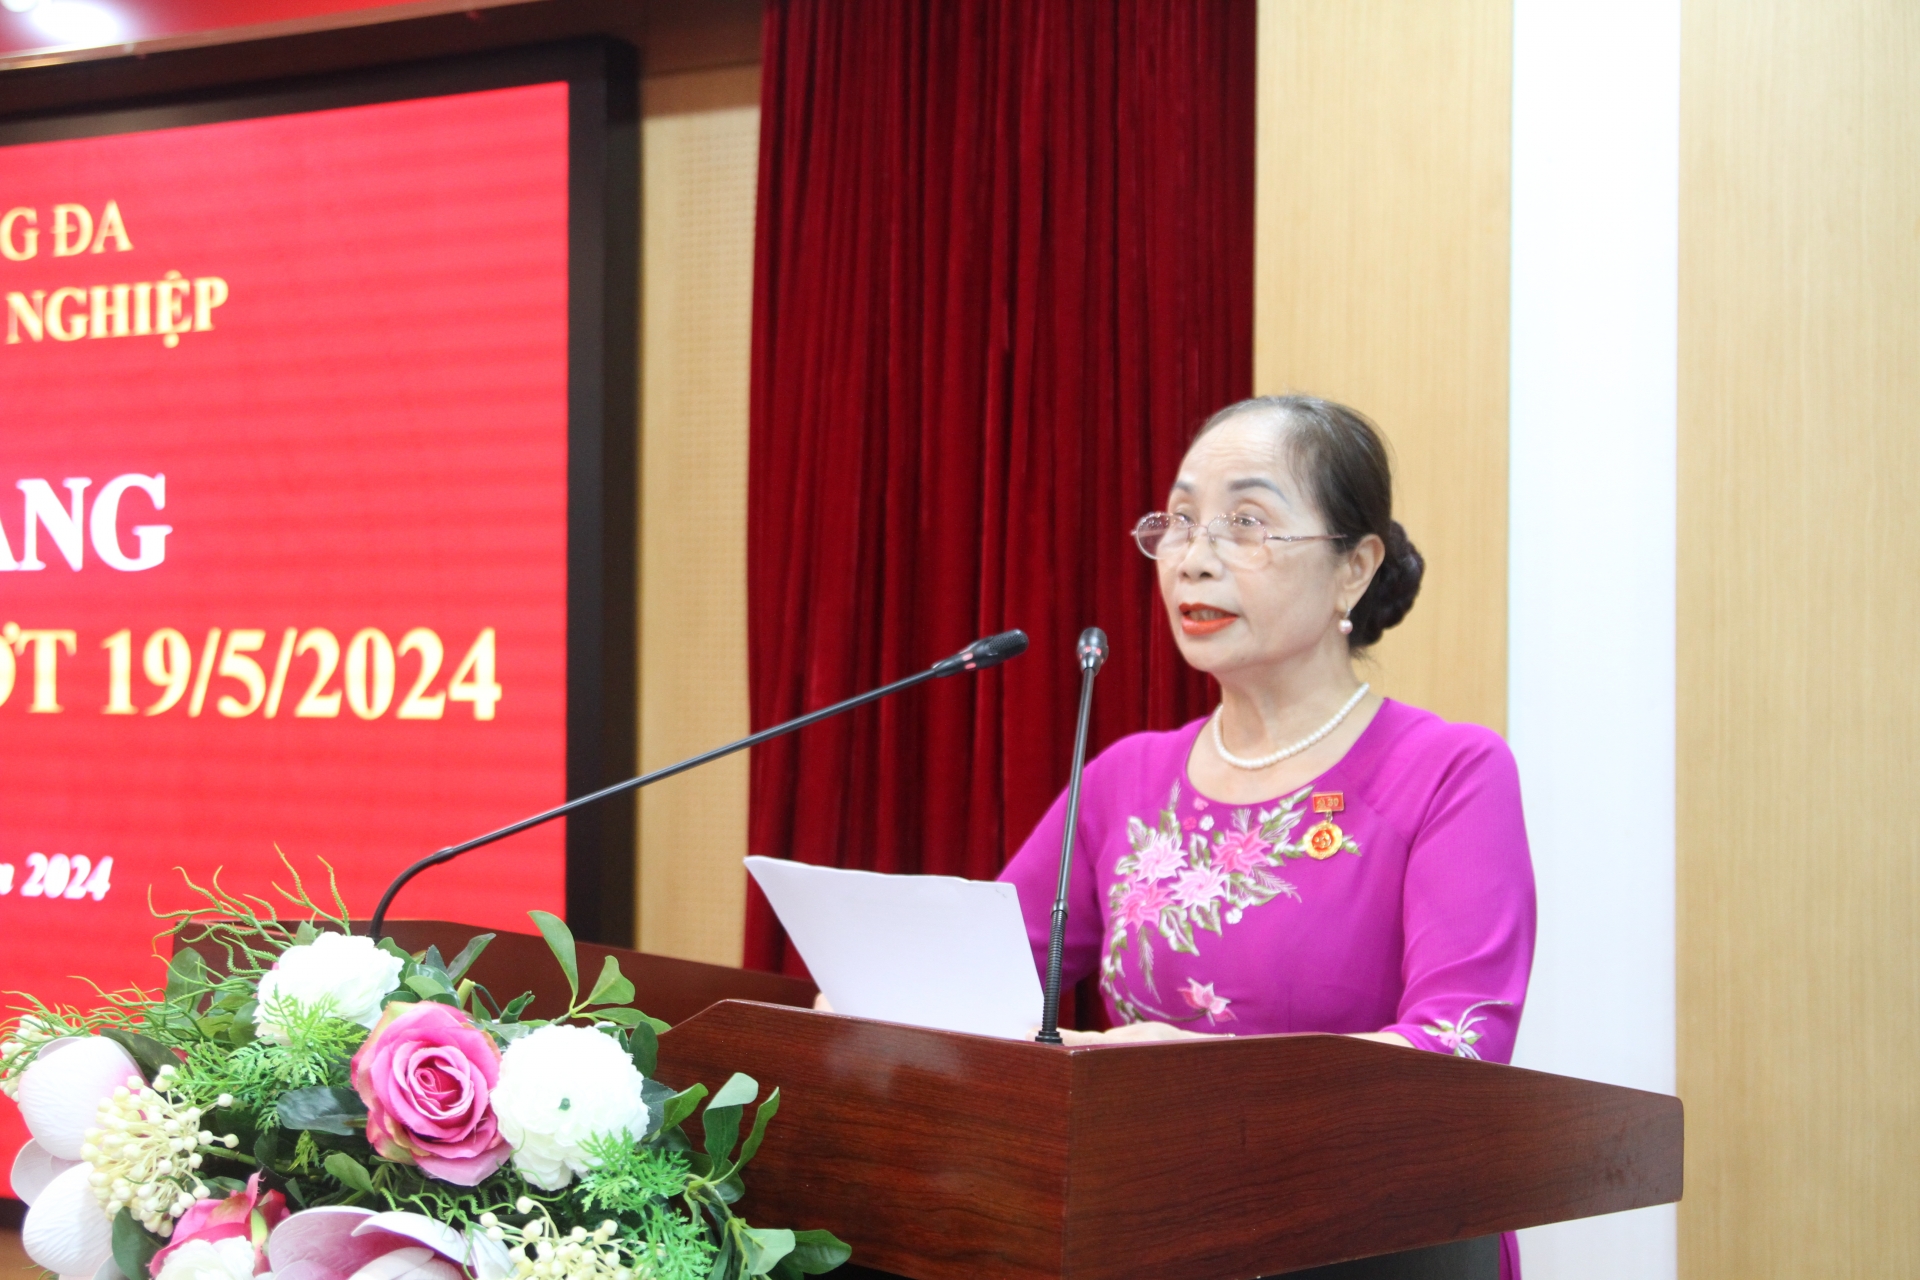 Thay mặt 14 đảng viên được nhận Huy hiệu Đảng đợt 19/5, đảng viên Lương Thị Hồng Thu phát biểu cảm tưởng